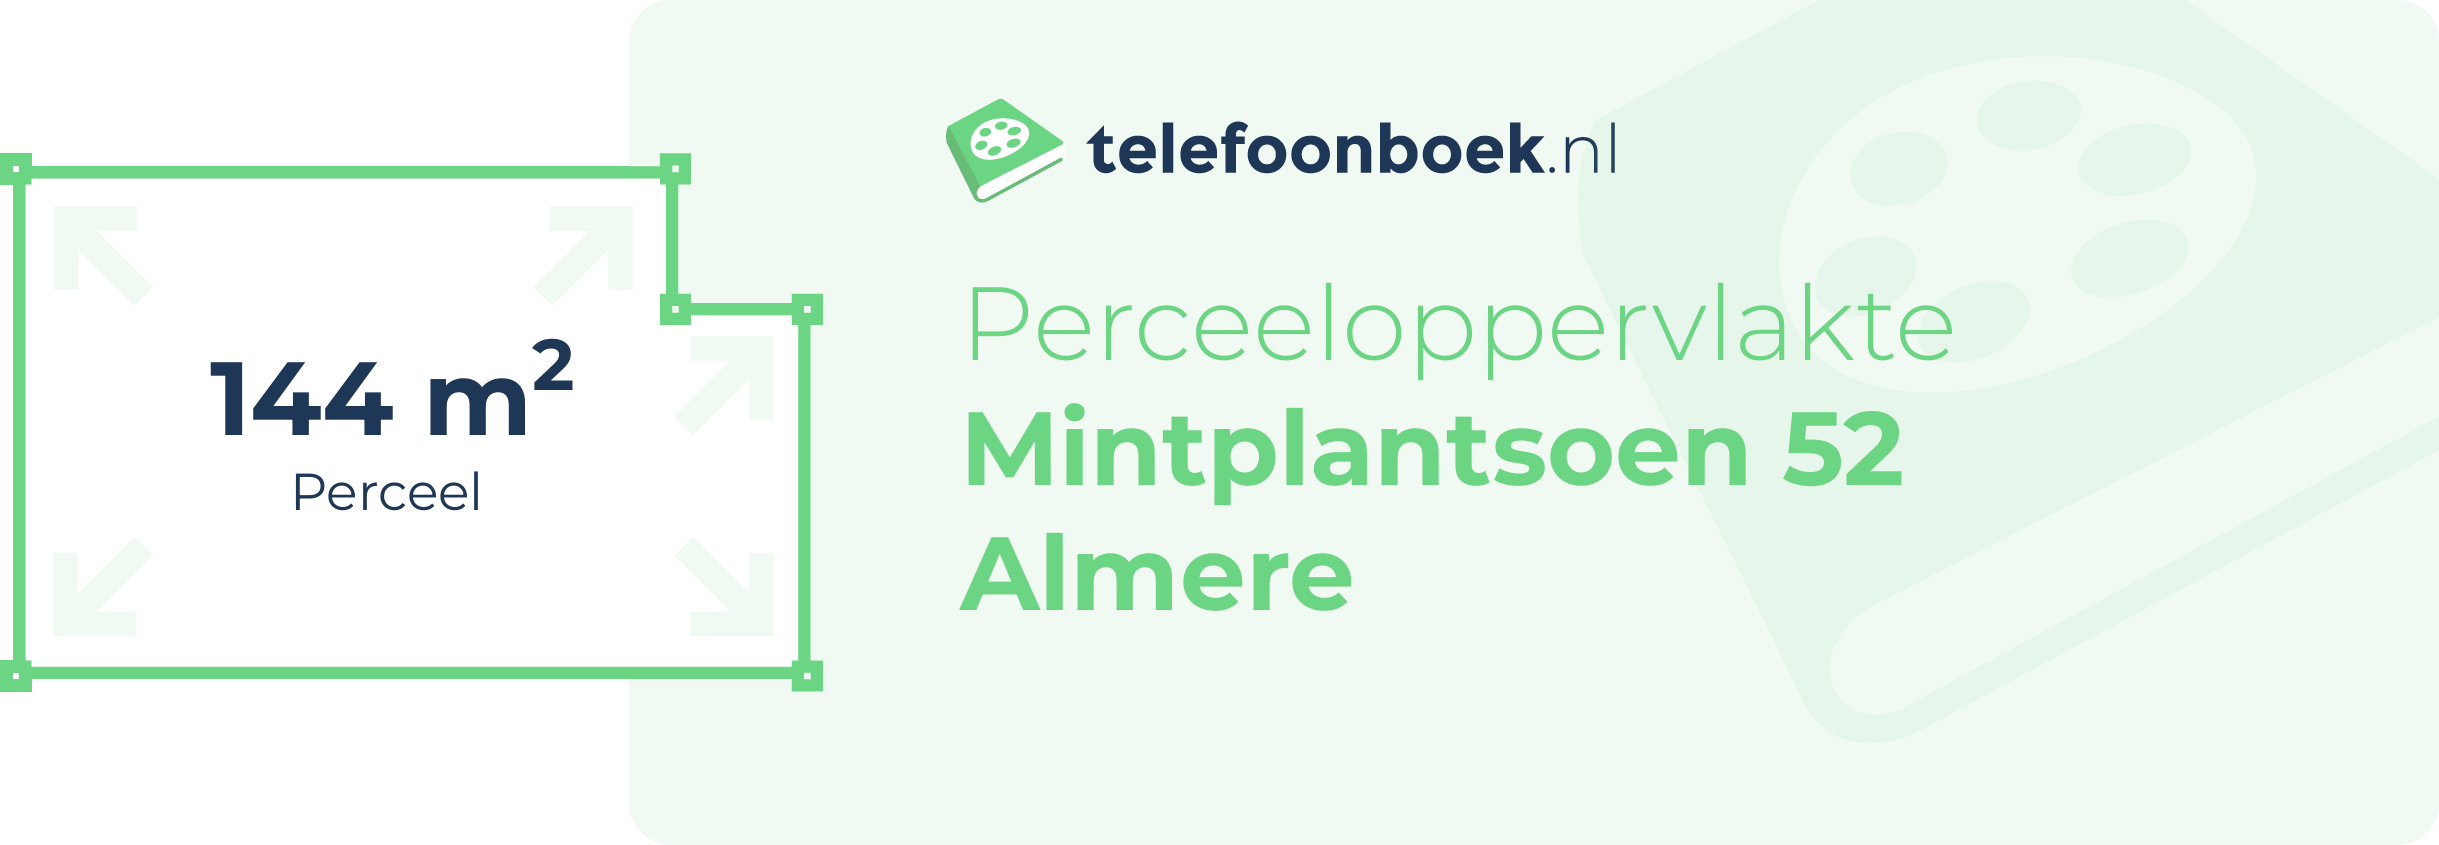 Perceeloppervlakte Mintplantsoen 52 Almere